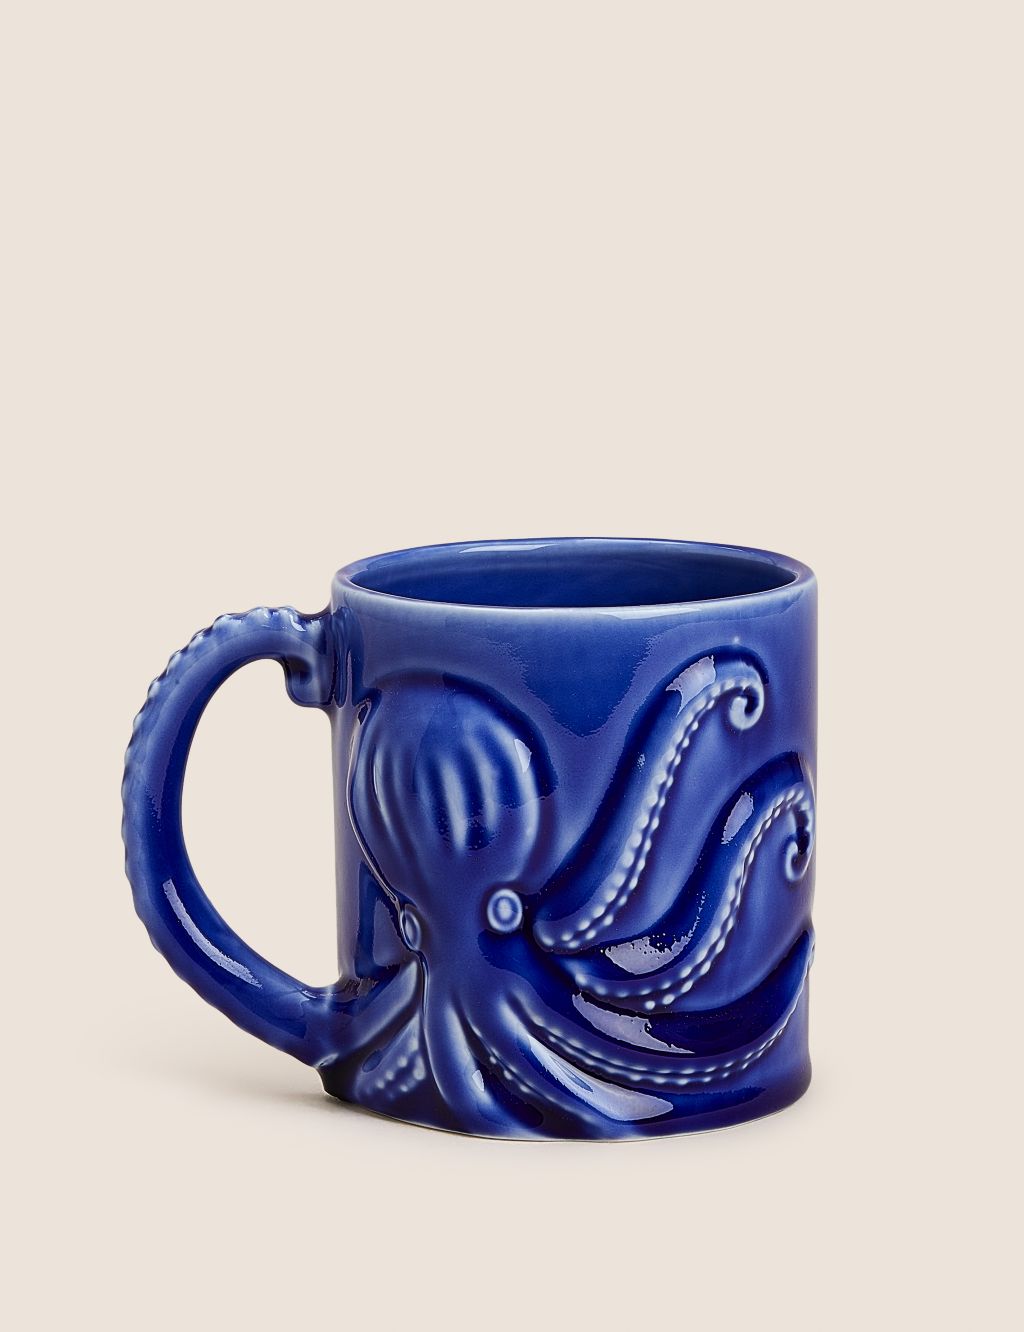 Octopus Mug 3 of 4